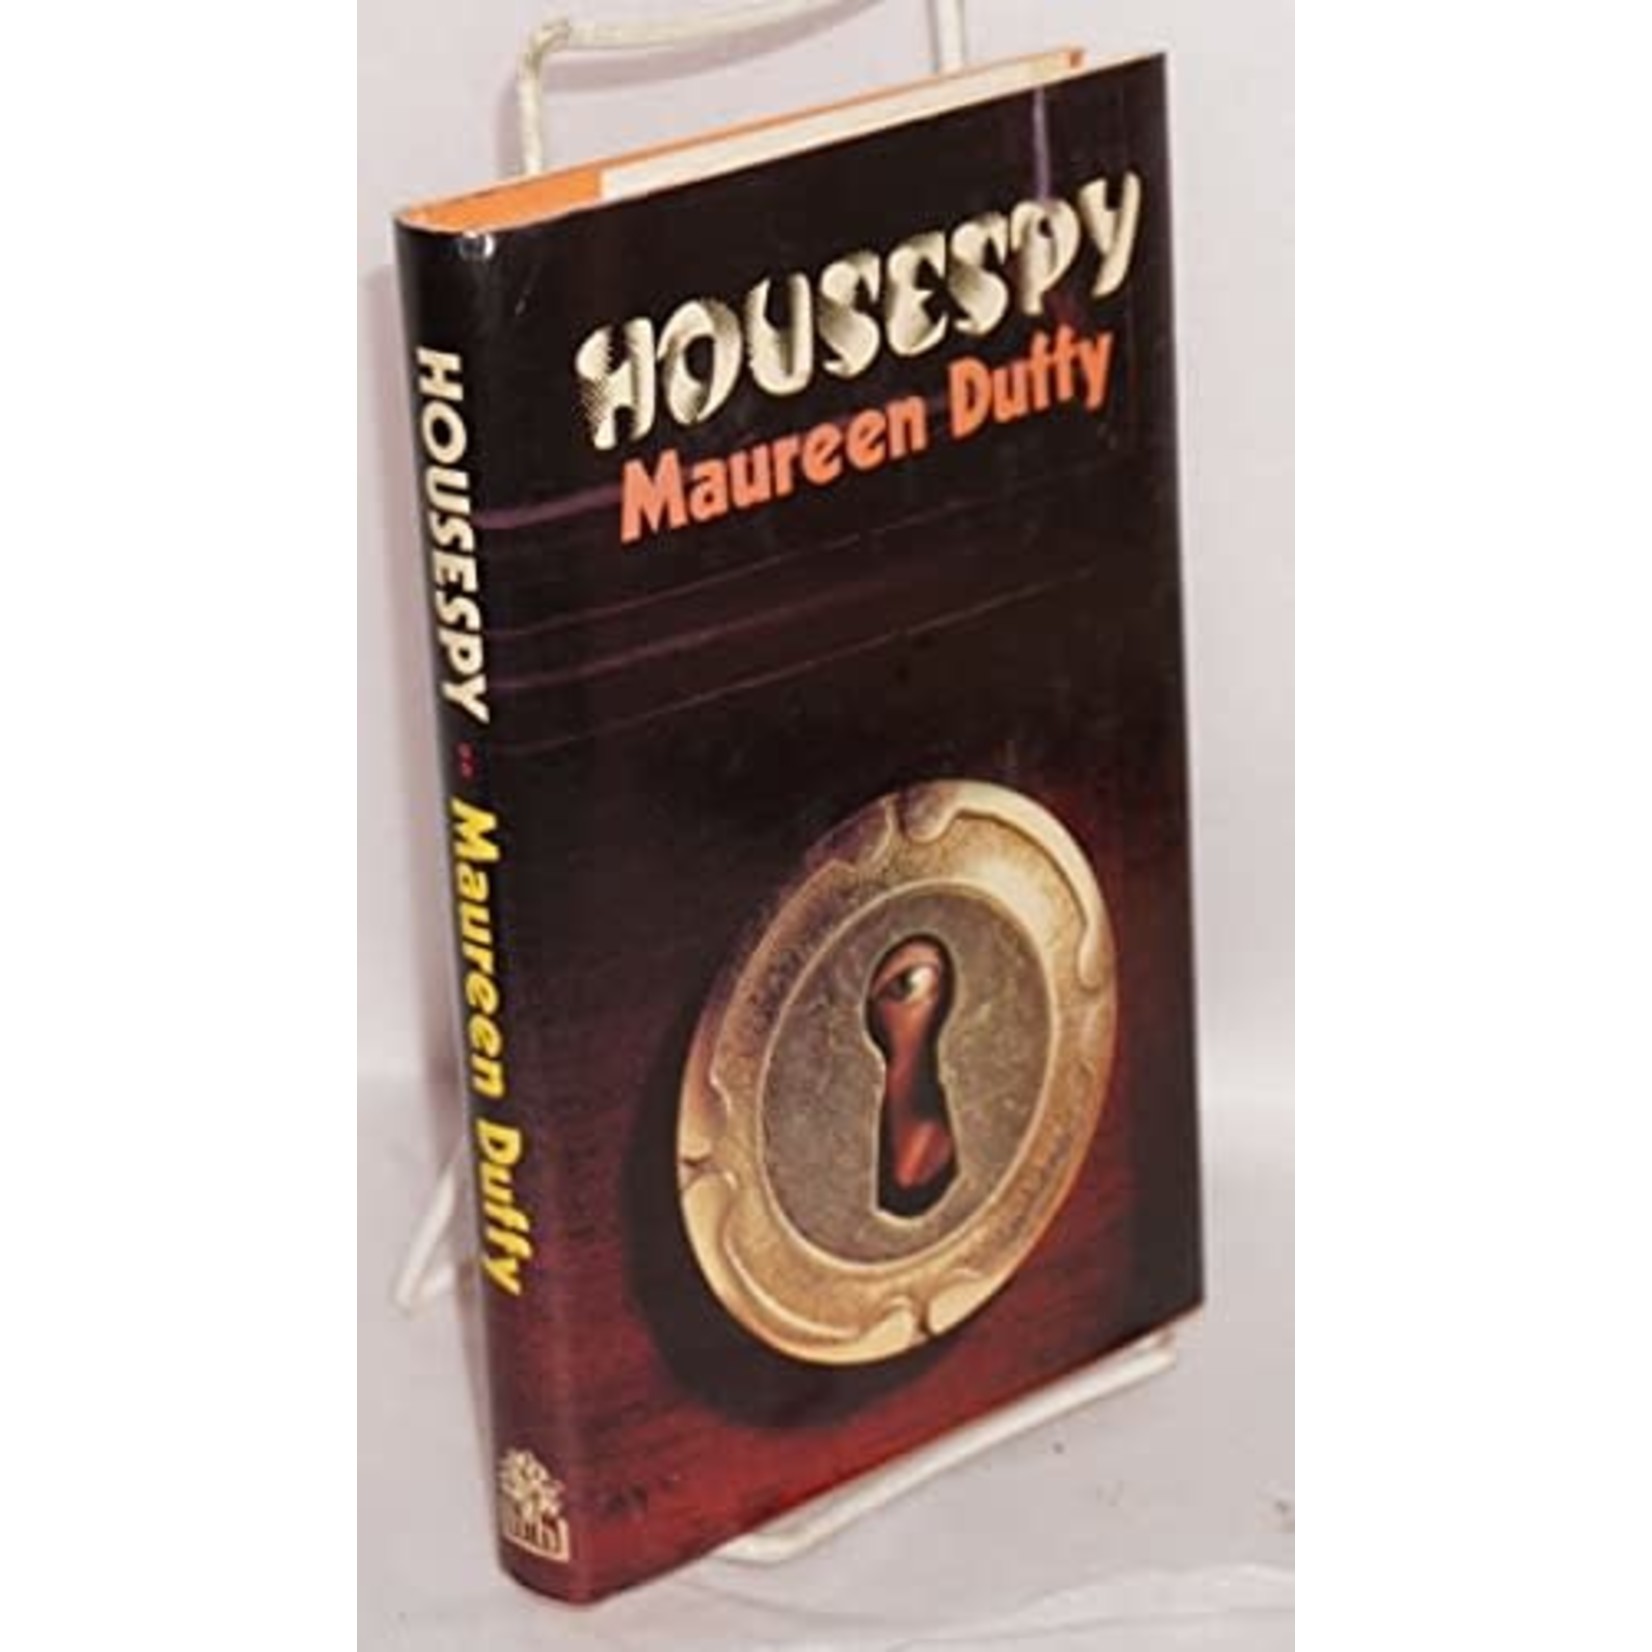 Duffy, Maureen Duffy, Maureen - Housespy (Hardcover)